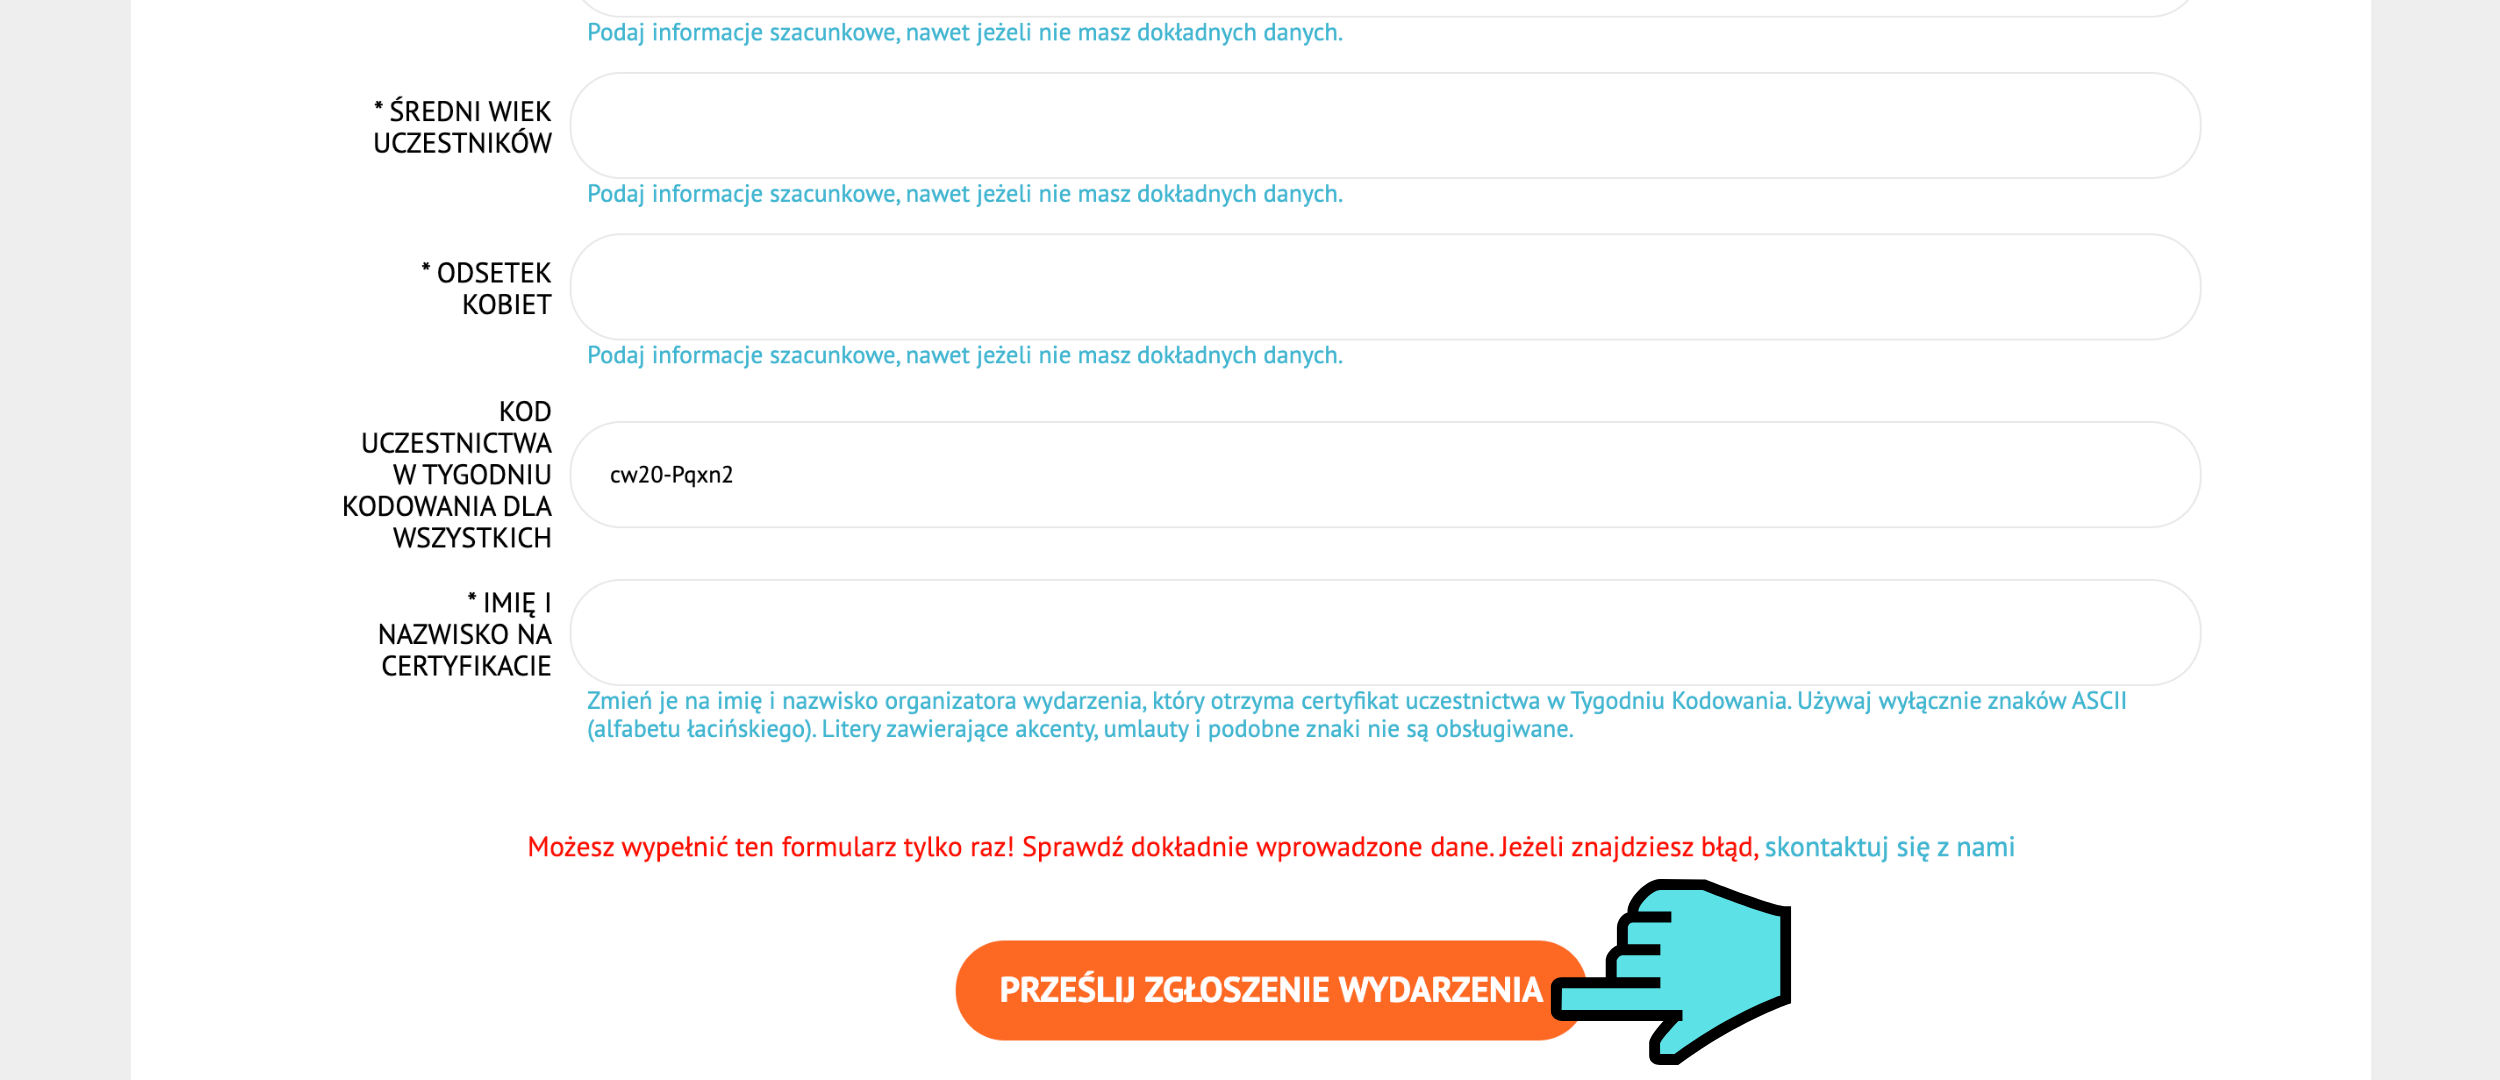 Grafika przedstawia stronę codeweek.eu po kliknięciu przycisku ““Zgłoś wydarzenie i odbierz certyfikat”. Na ekranie znajduje się ciąg dalszy formularza, zakończony pomarańczowym przyciskiem z napisem “Prześlij zgłoszenie wydarzenia”. Wskazuje na niego niebieski symbol kursora myszy.